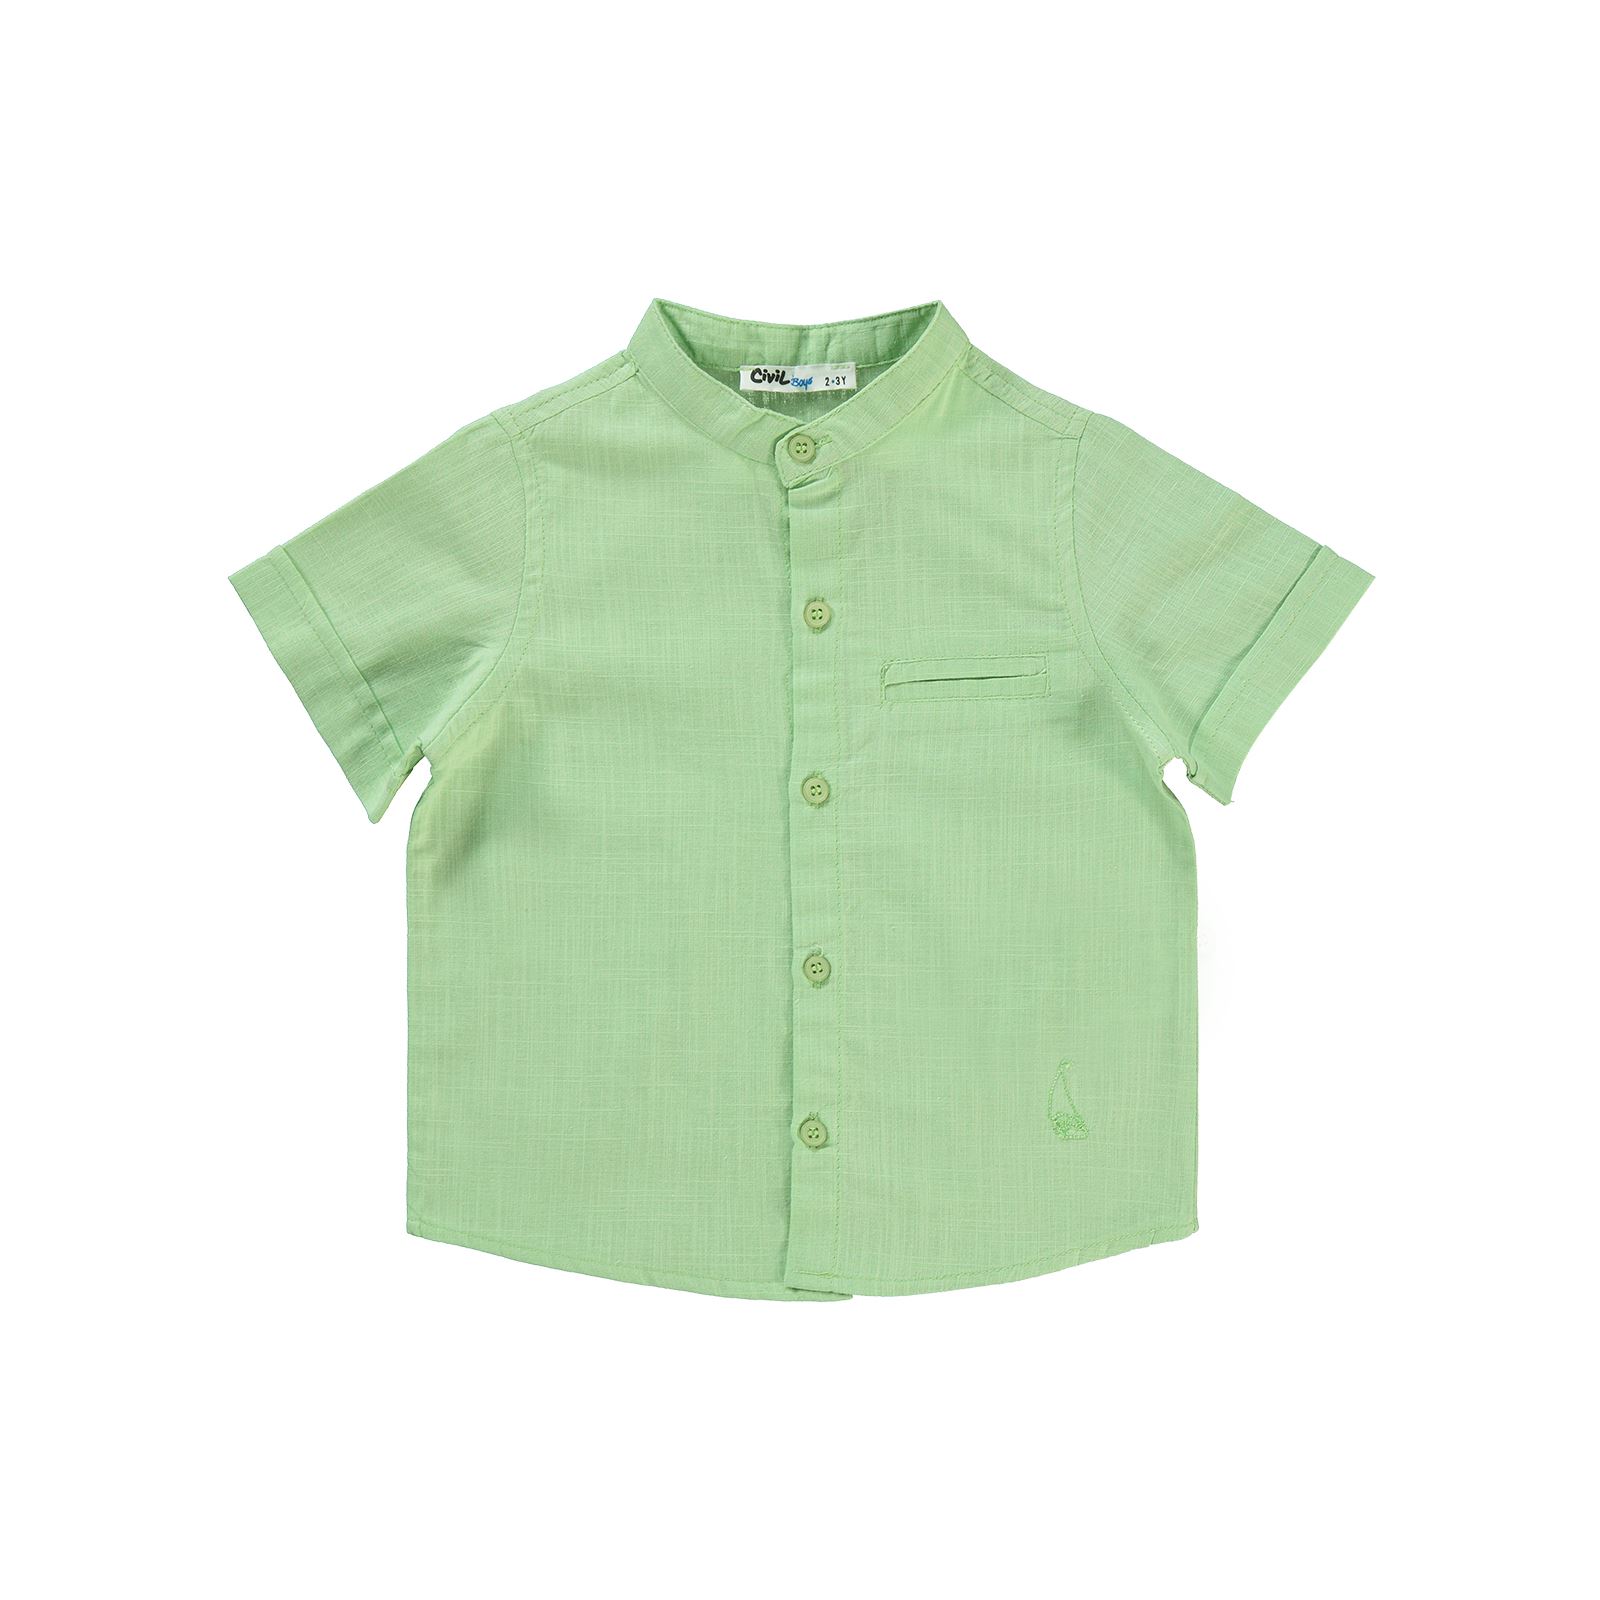 Civil Boys Erkek Çocuk Gömlek 2-5 Yaş Açık Yeşil